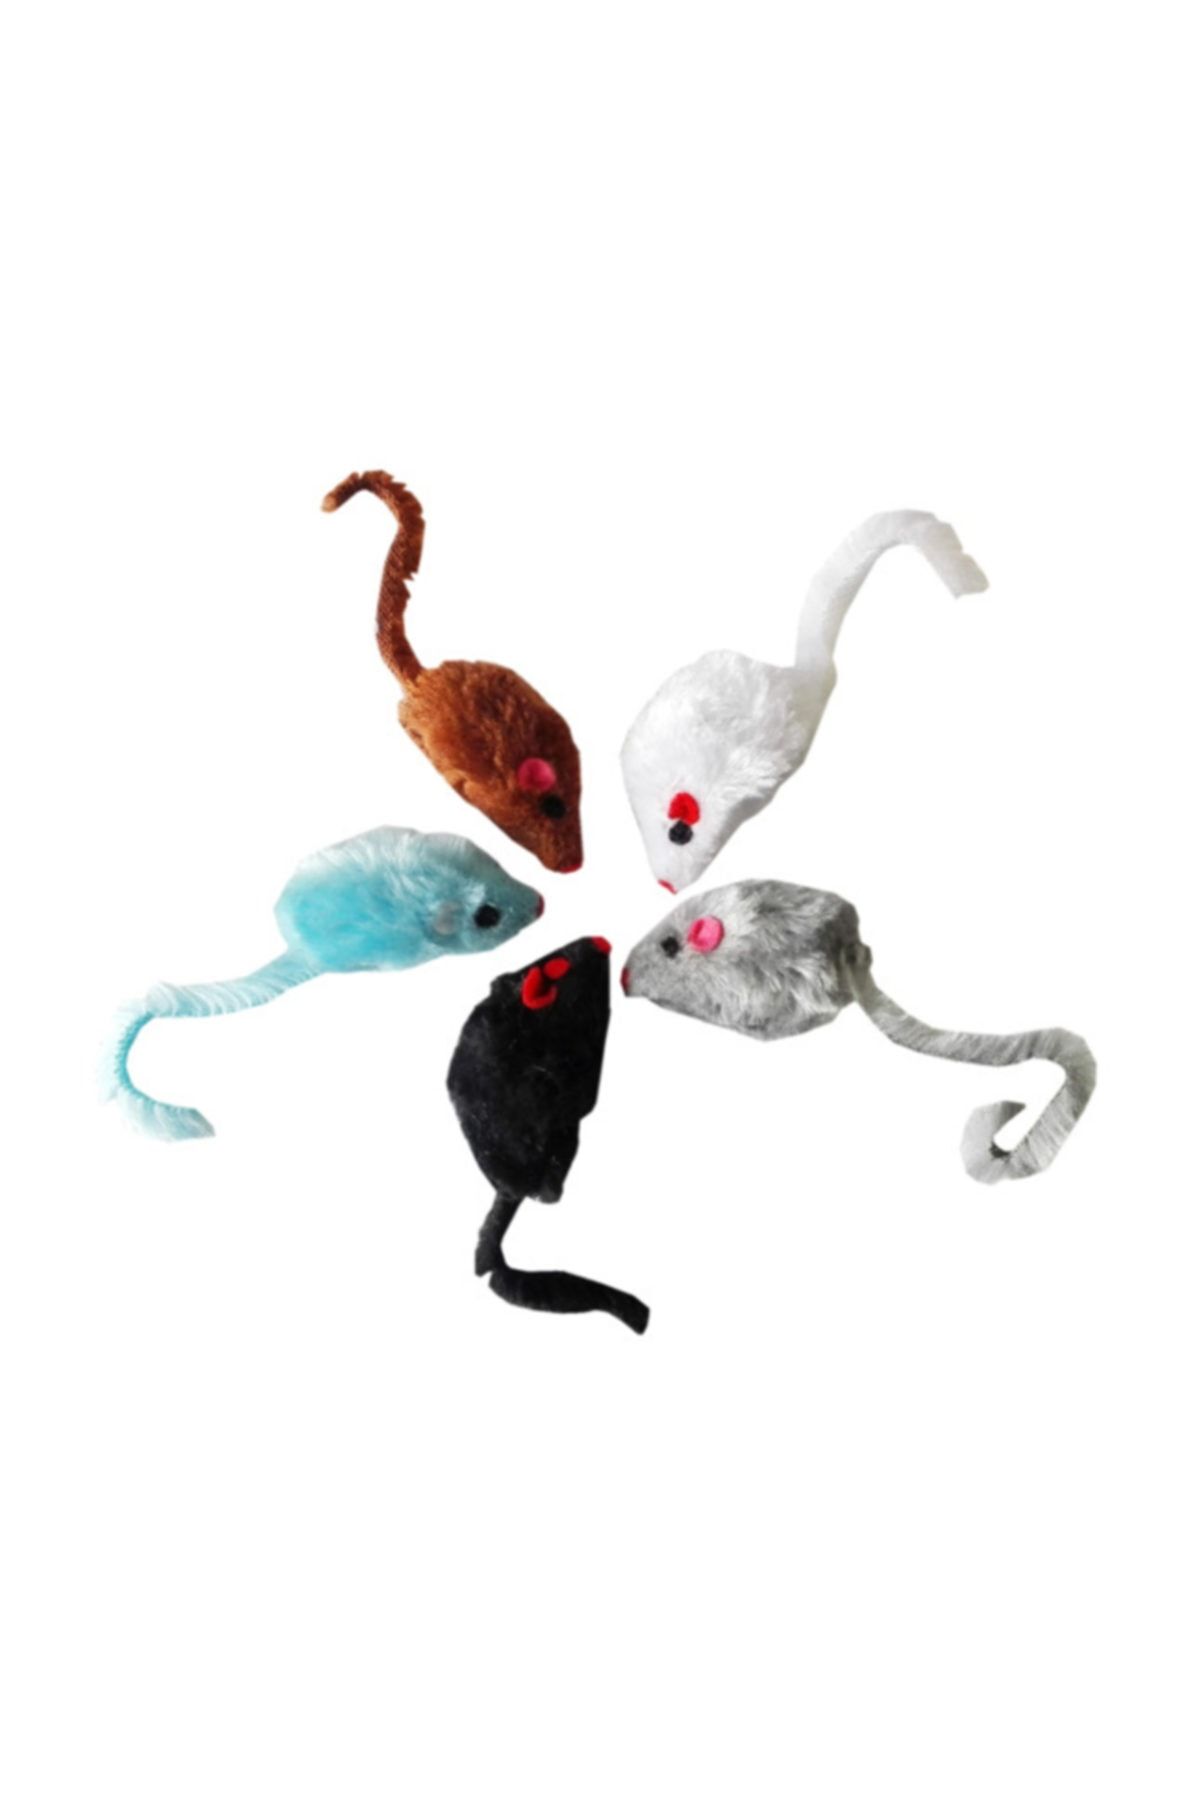 Karlie Renkli Kedi Oyuncak Tüylü Peluş Fare 3X5X10 Cm